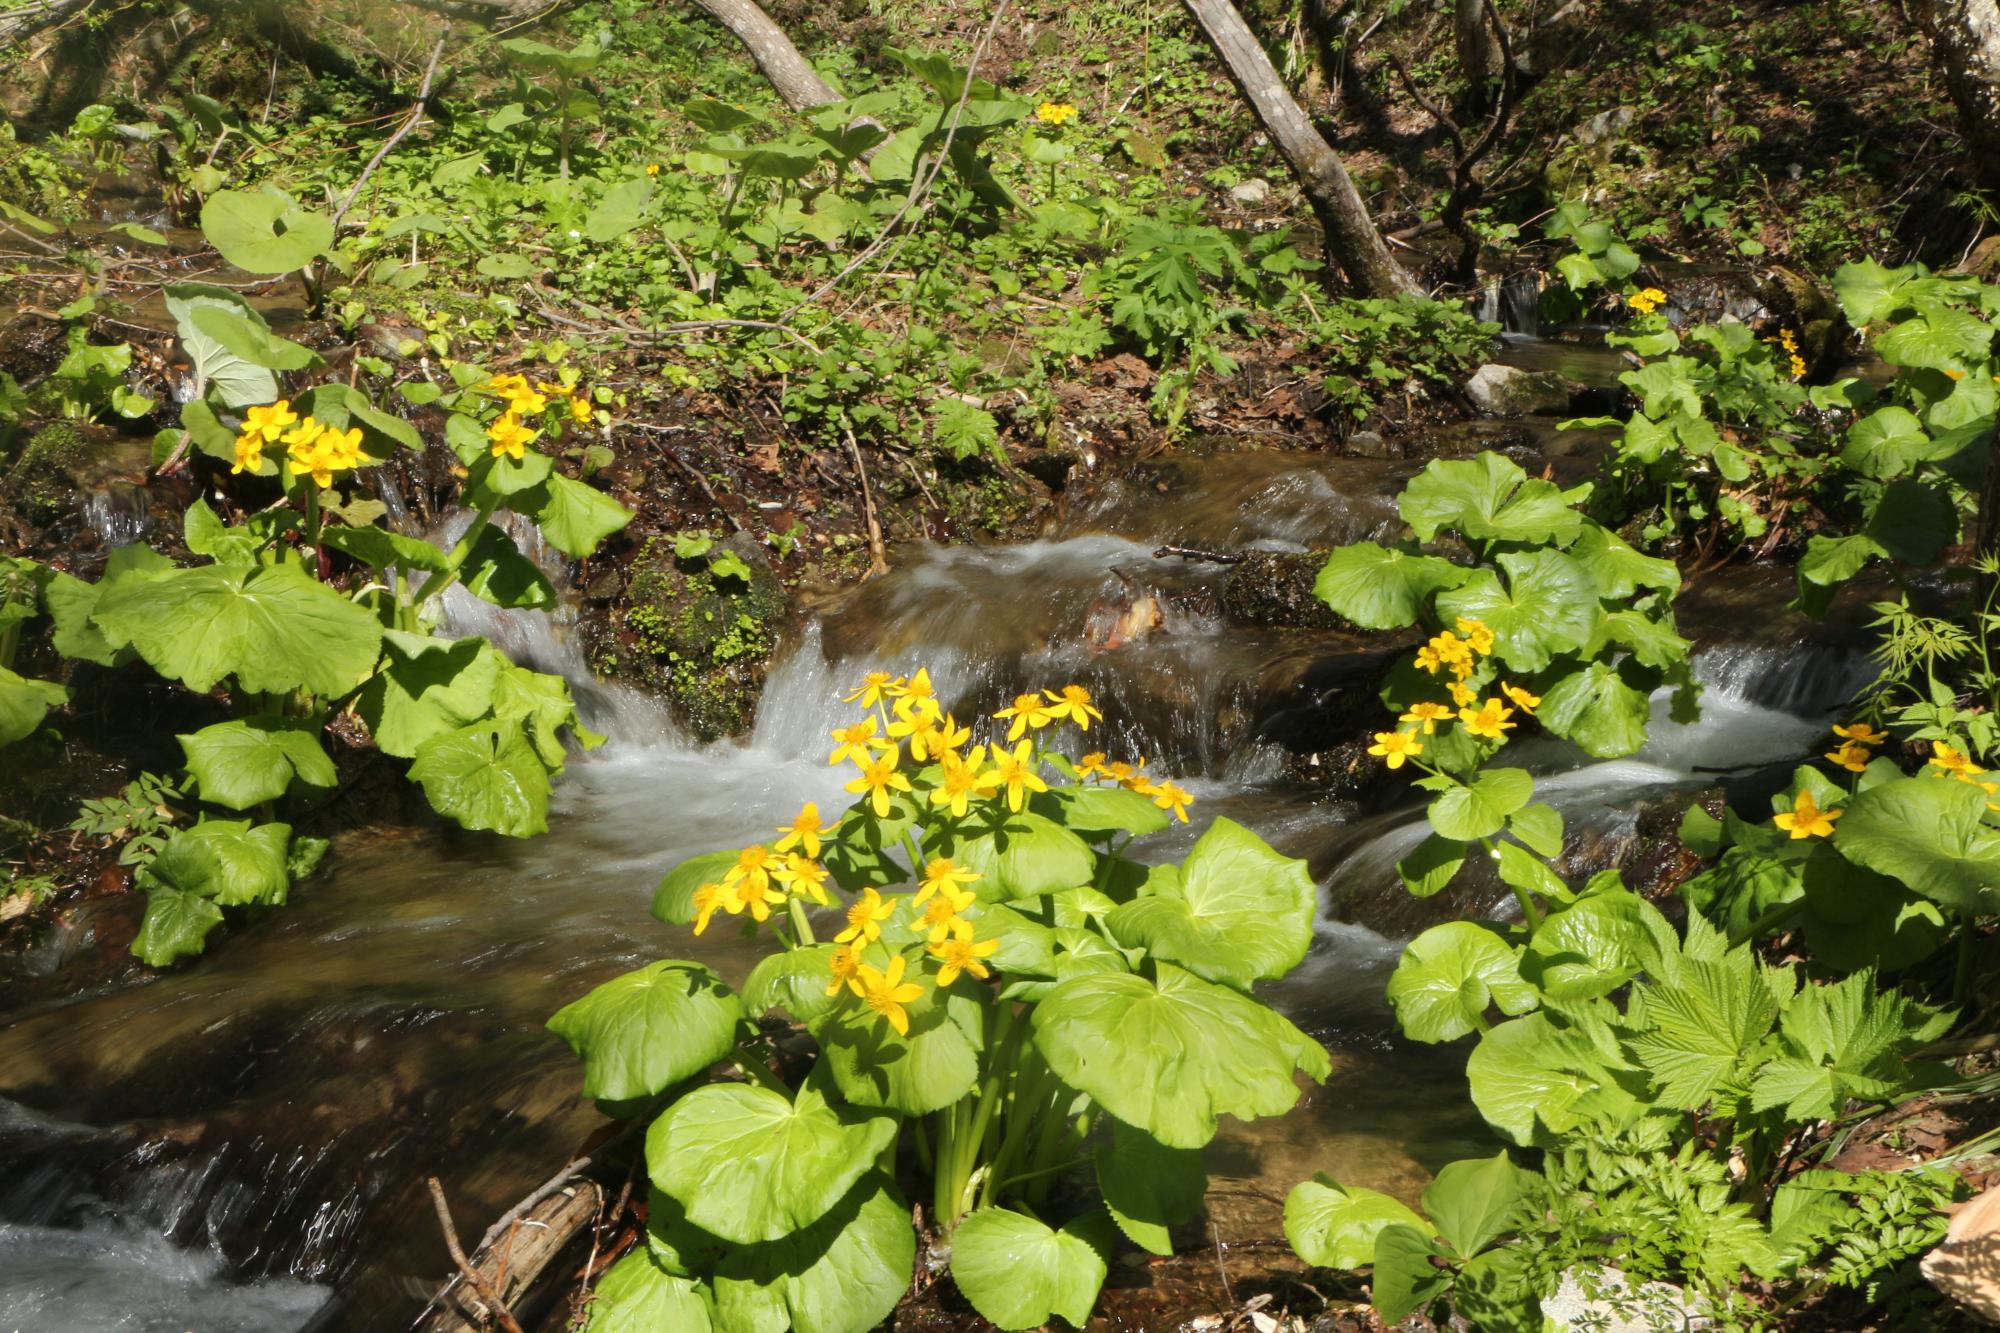 湧き水がでる周りに小さな黄色い花が咲いている様子を写した写真